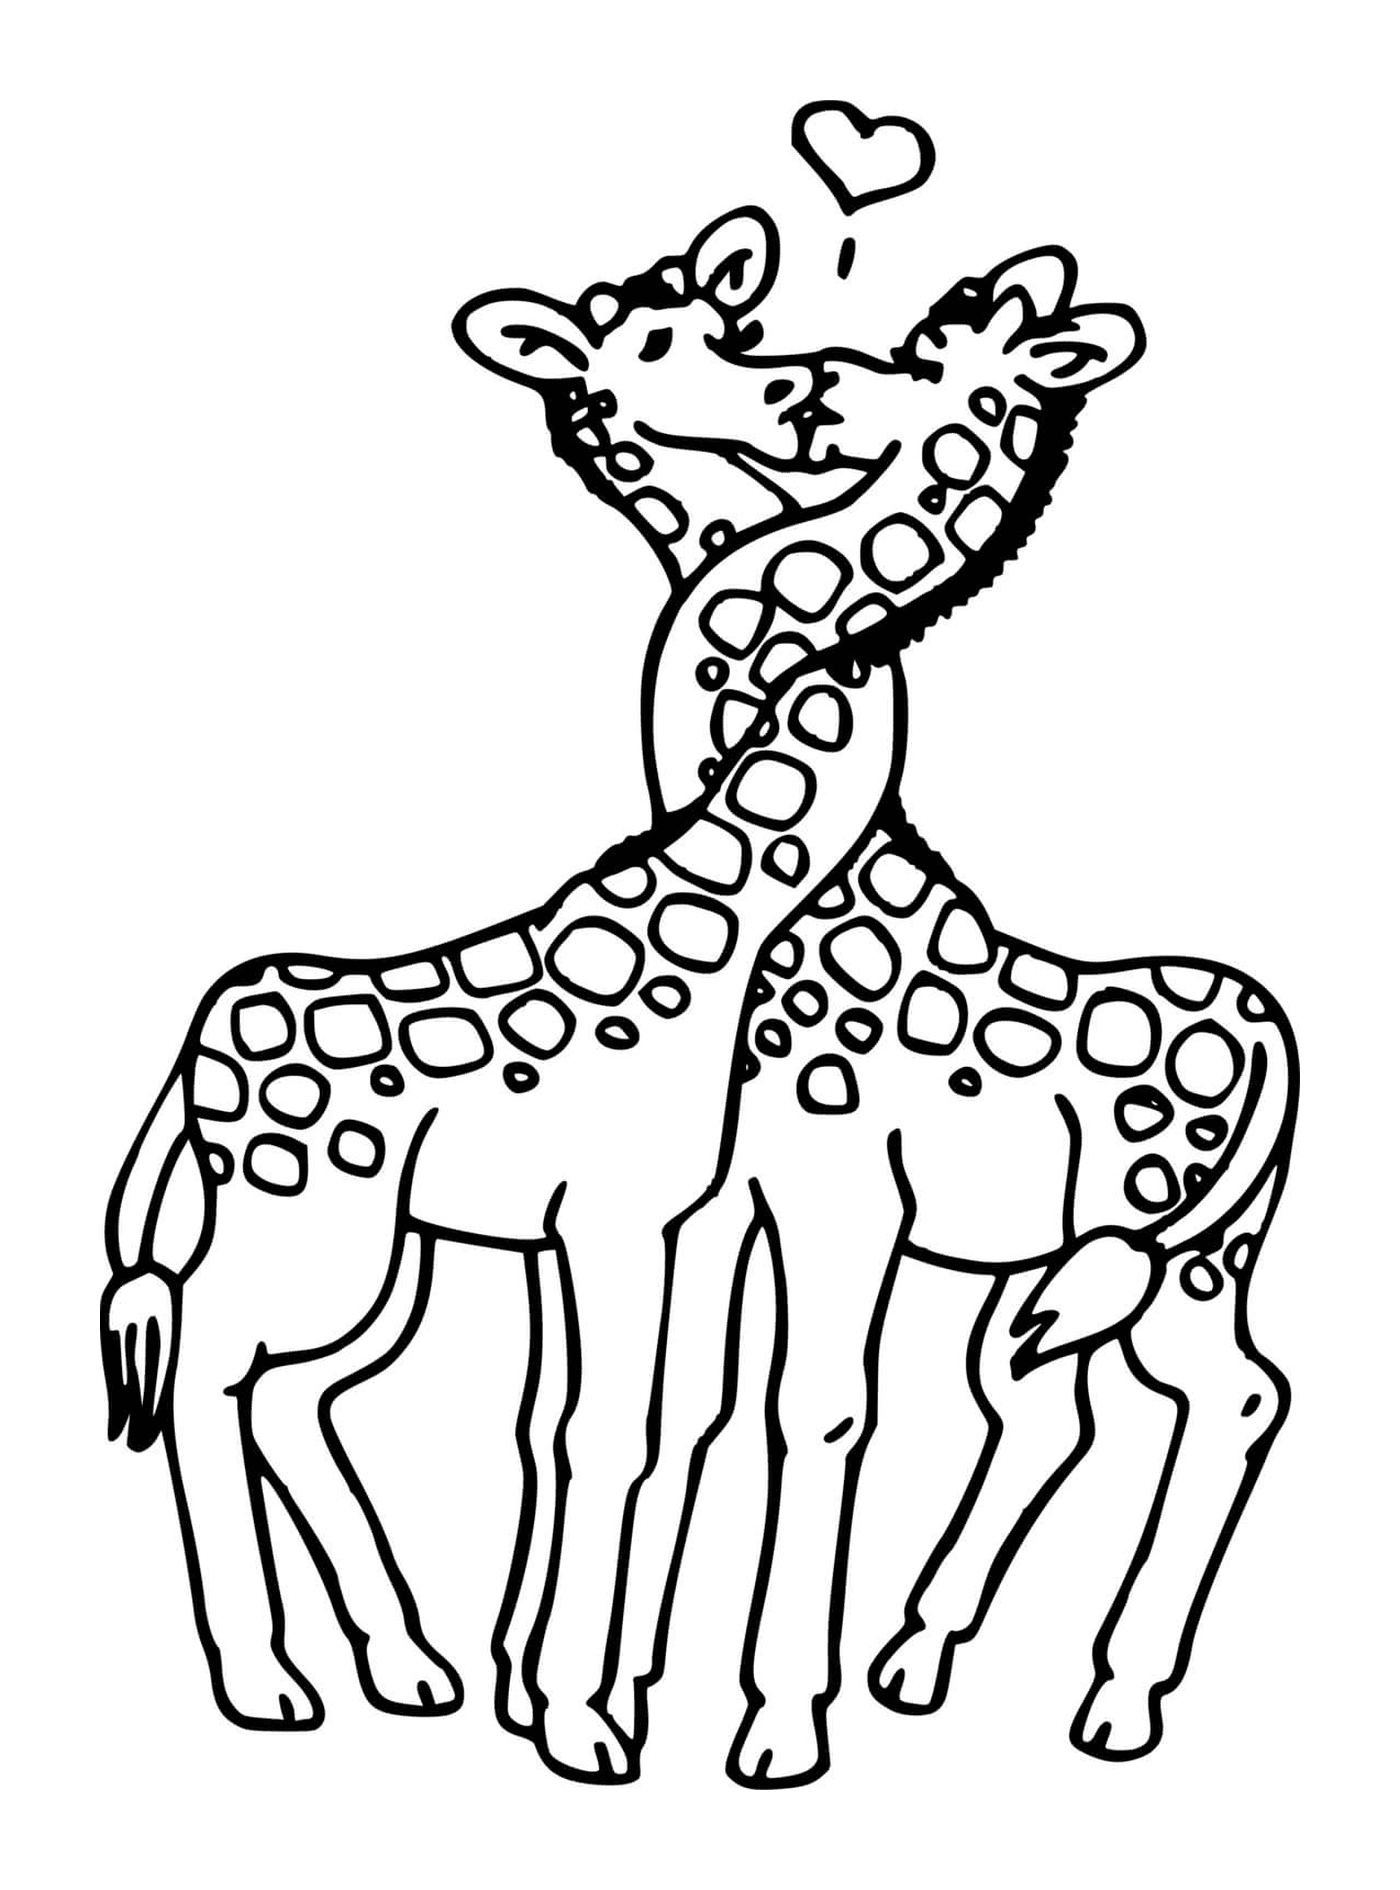  两只长颈鹿接吻 